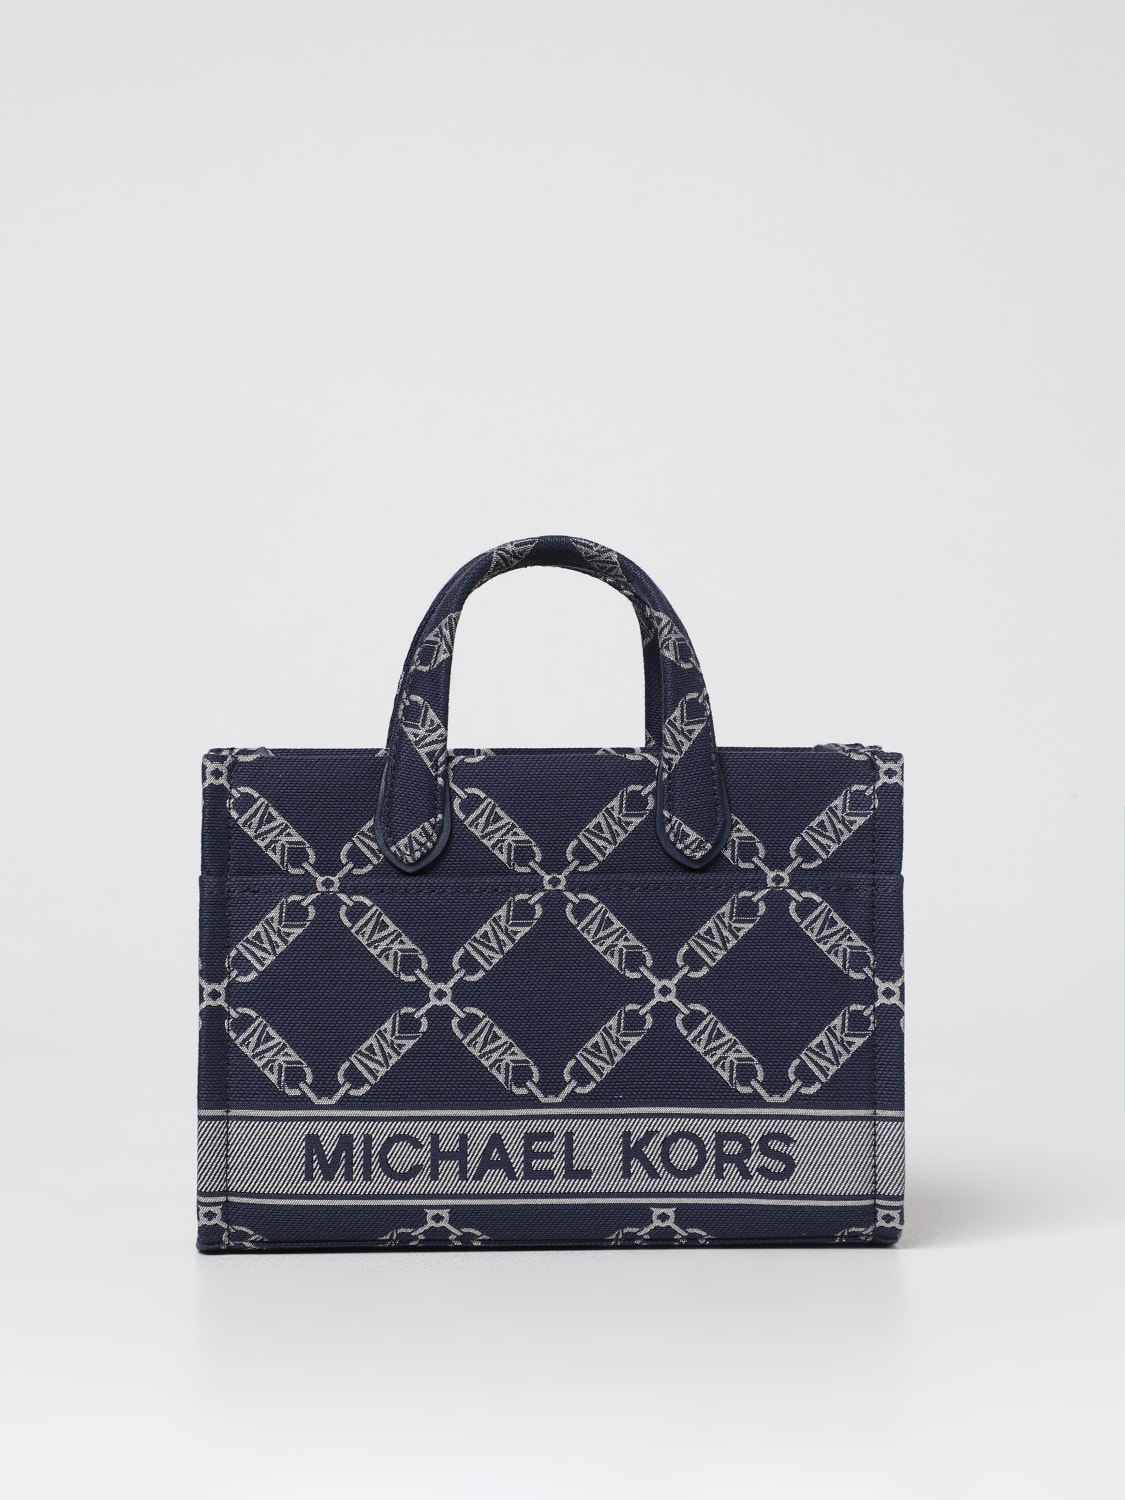 MICHAEL KORS: handbag for woman - Navy